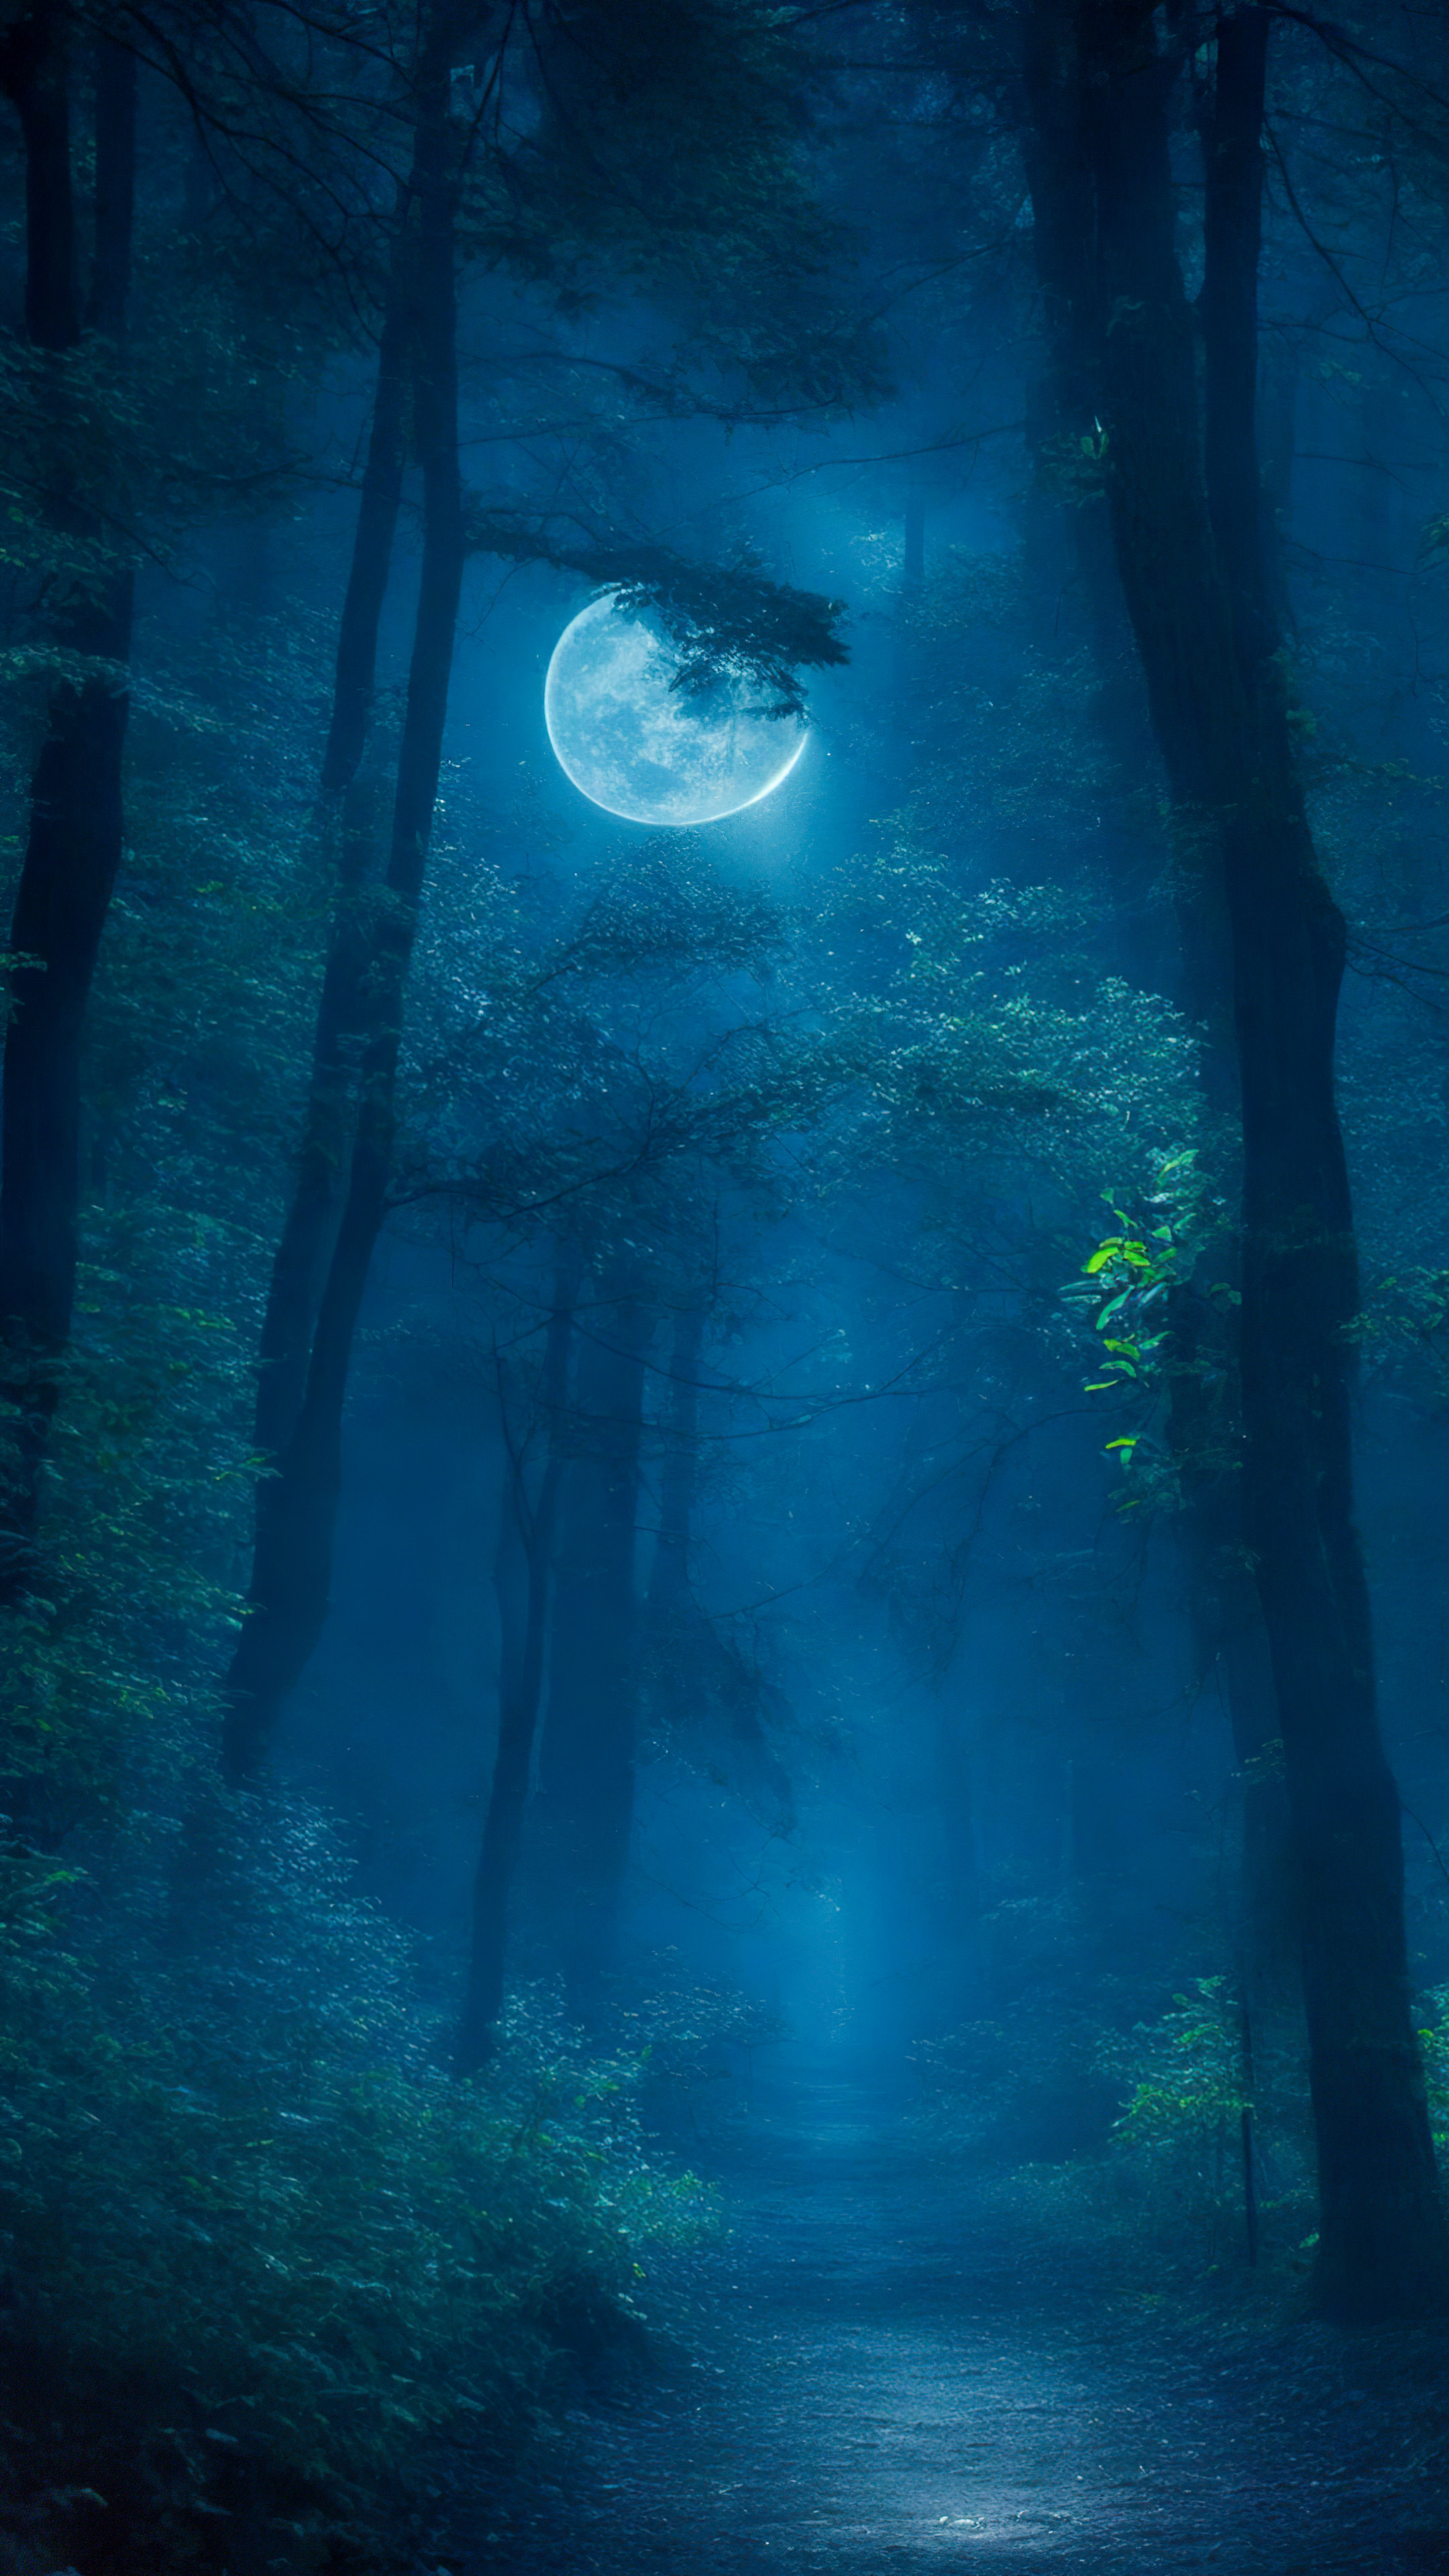 Vivez le mystère avec notre meilleur fond d'écran de paysage, mettant en scène une forêt mystérieuse la nuit, où la lumière de la lune filtre à travers les arbres, créant une atmosphère envoûtante et étrange.